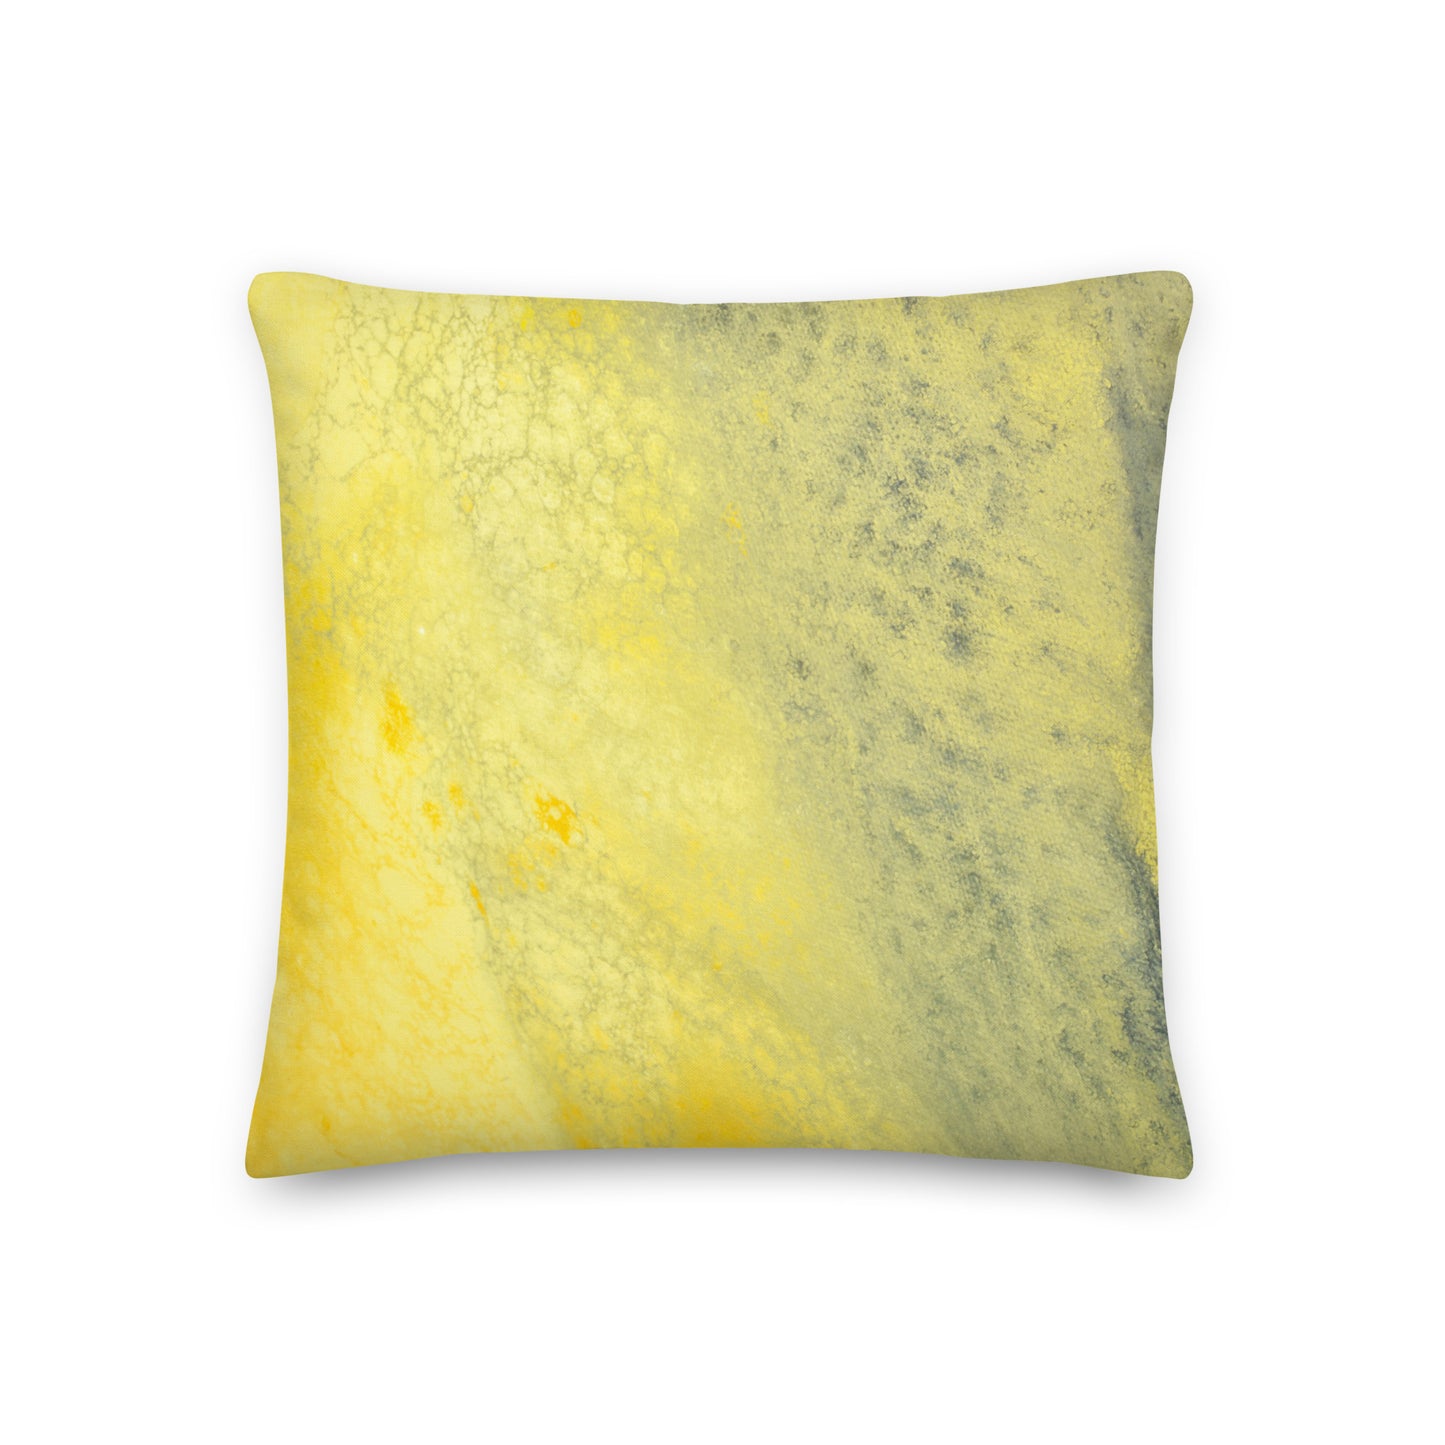 Premium-Kissen – Design in Gelb und Grau